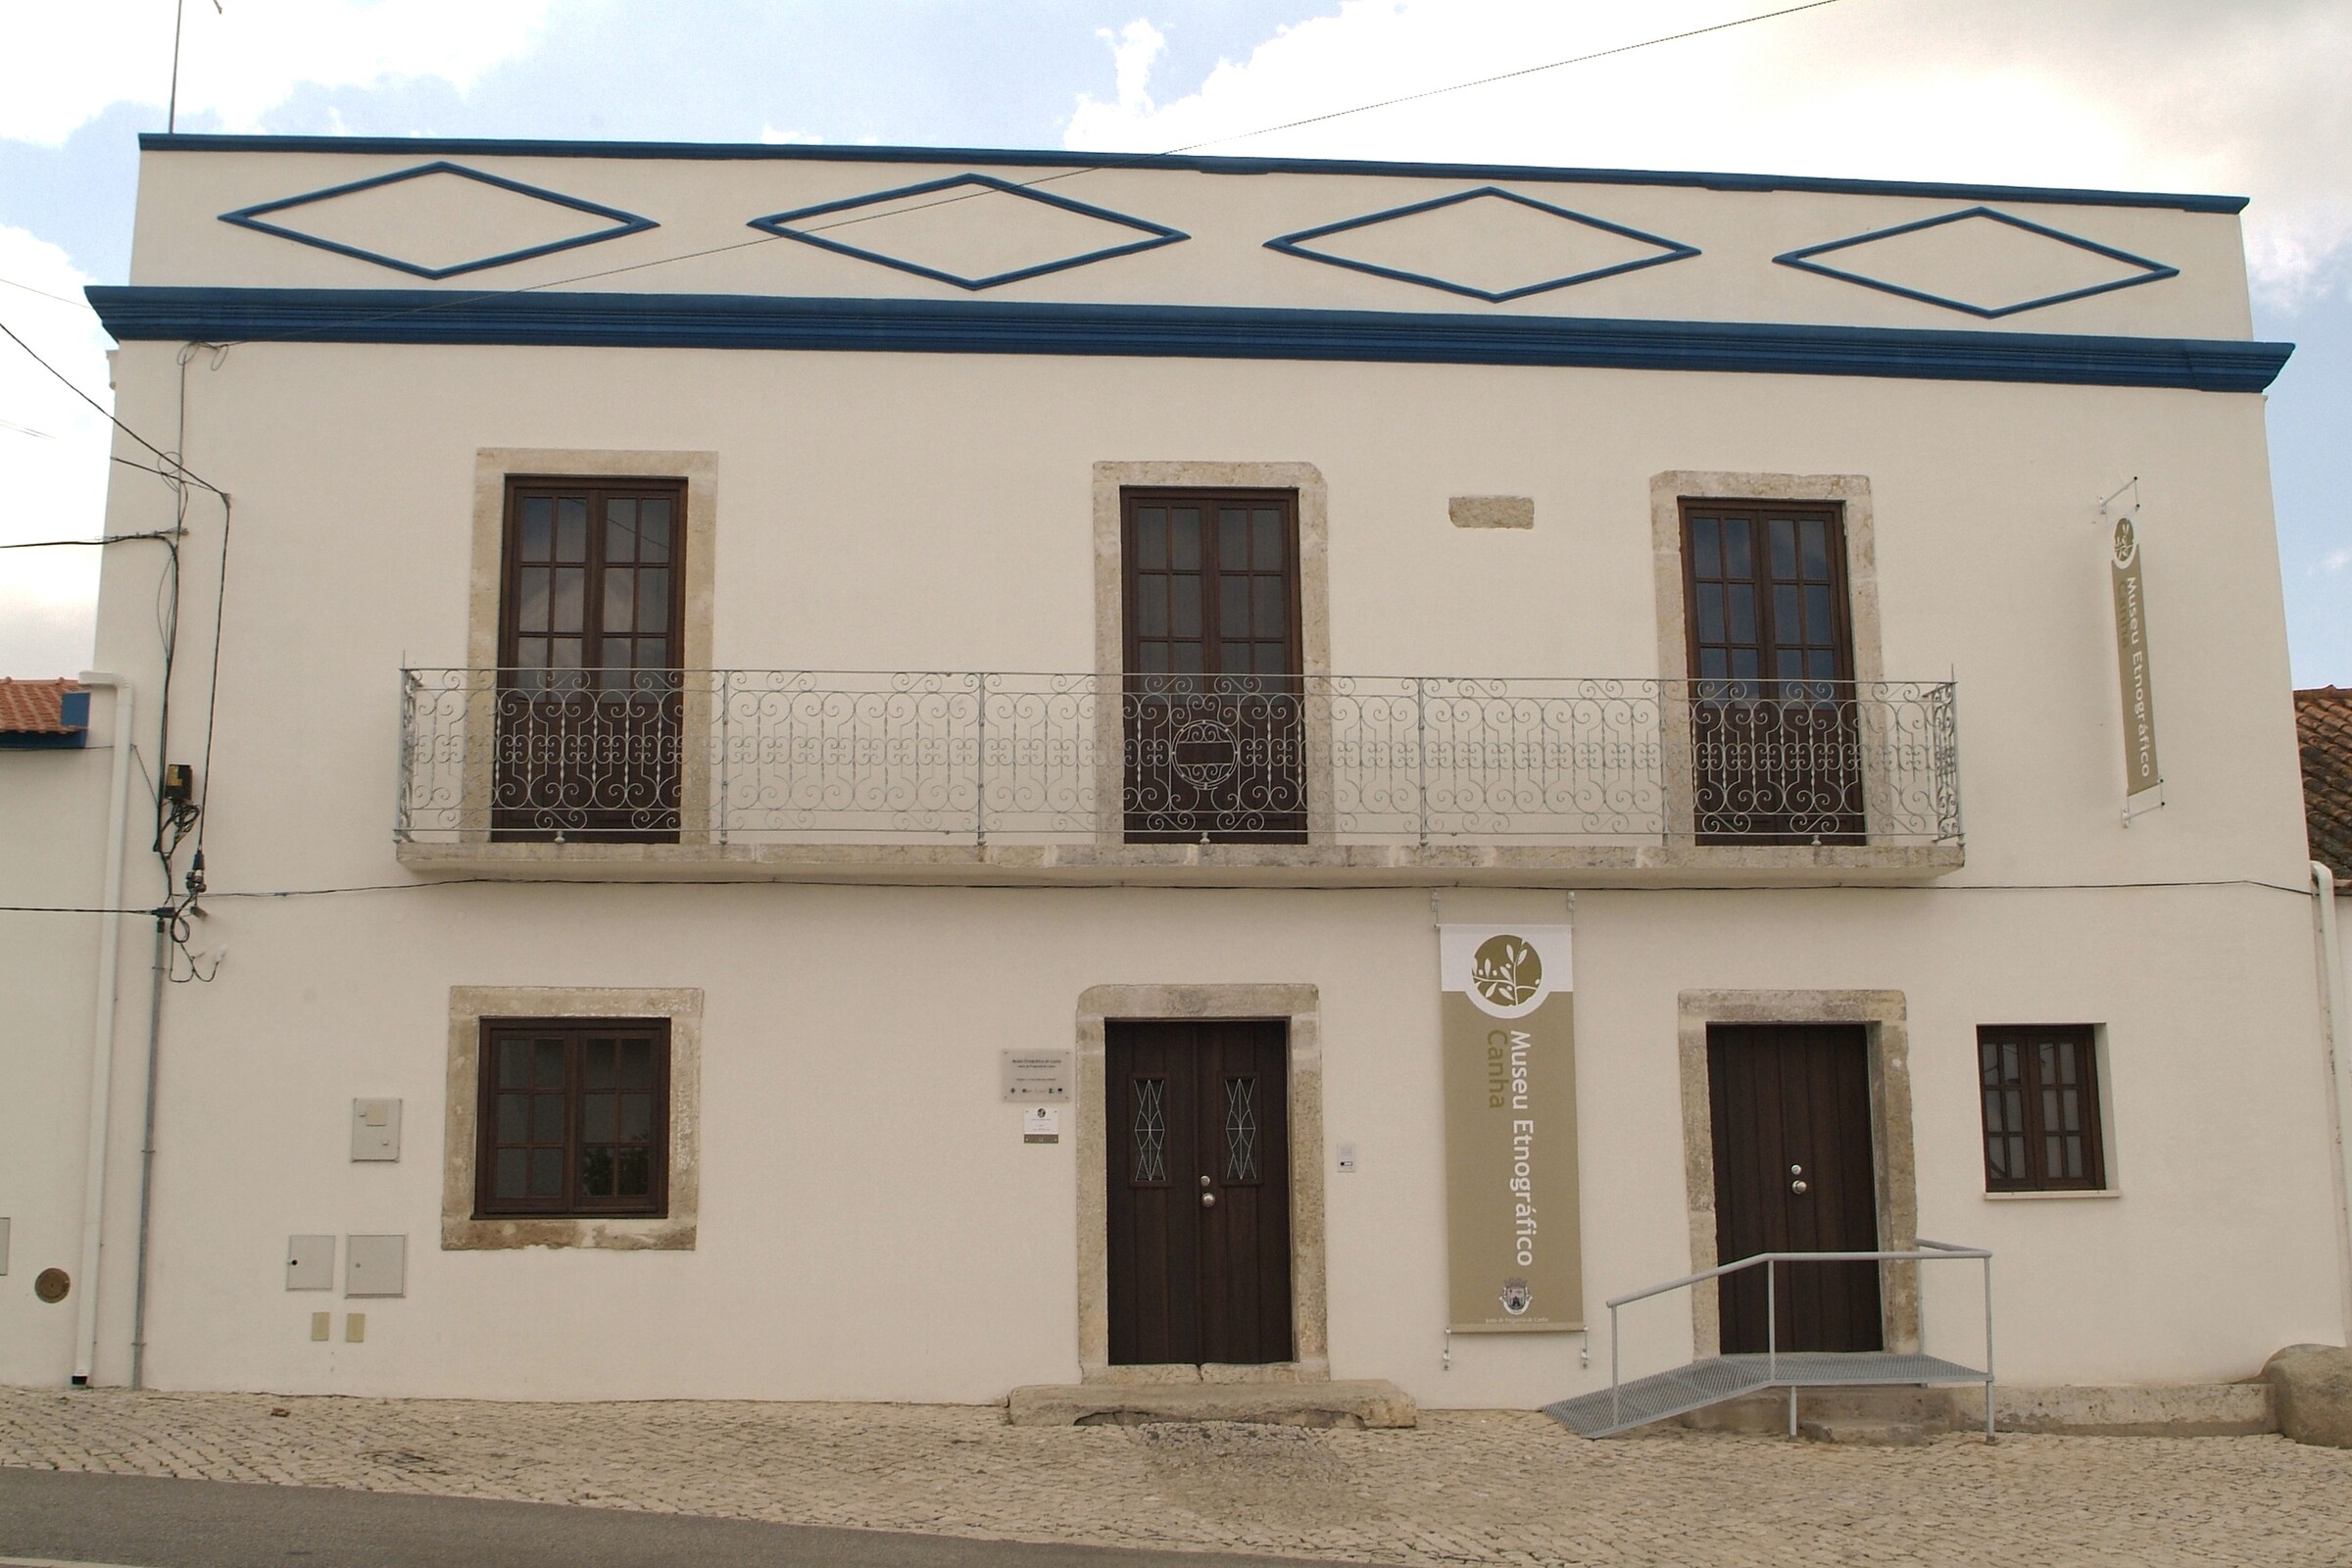 3. Museu Etnográfico de Canha